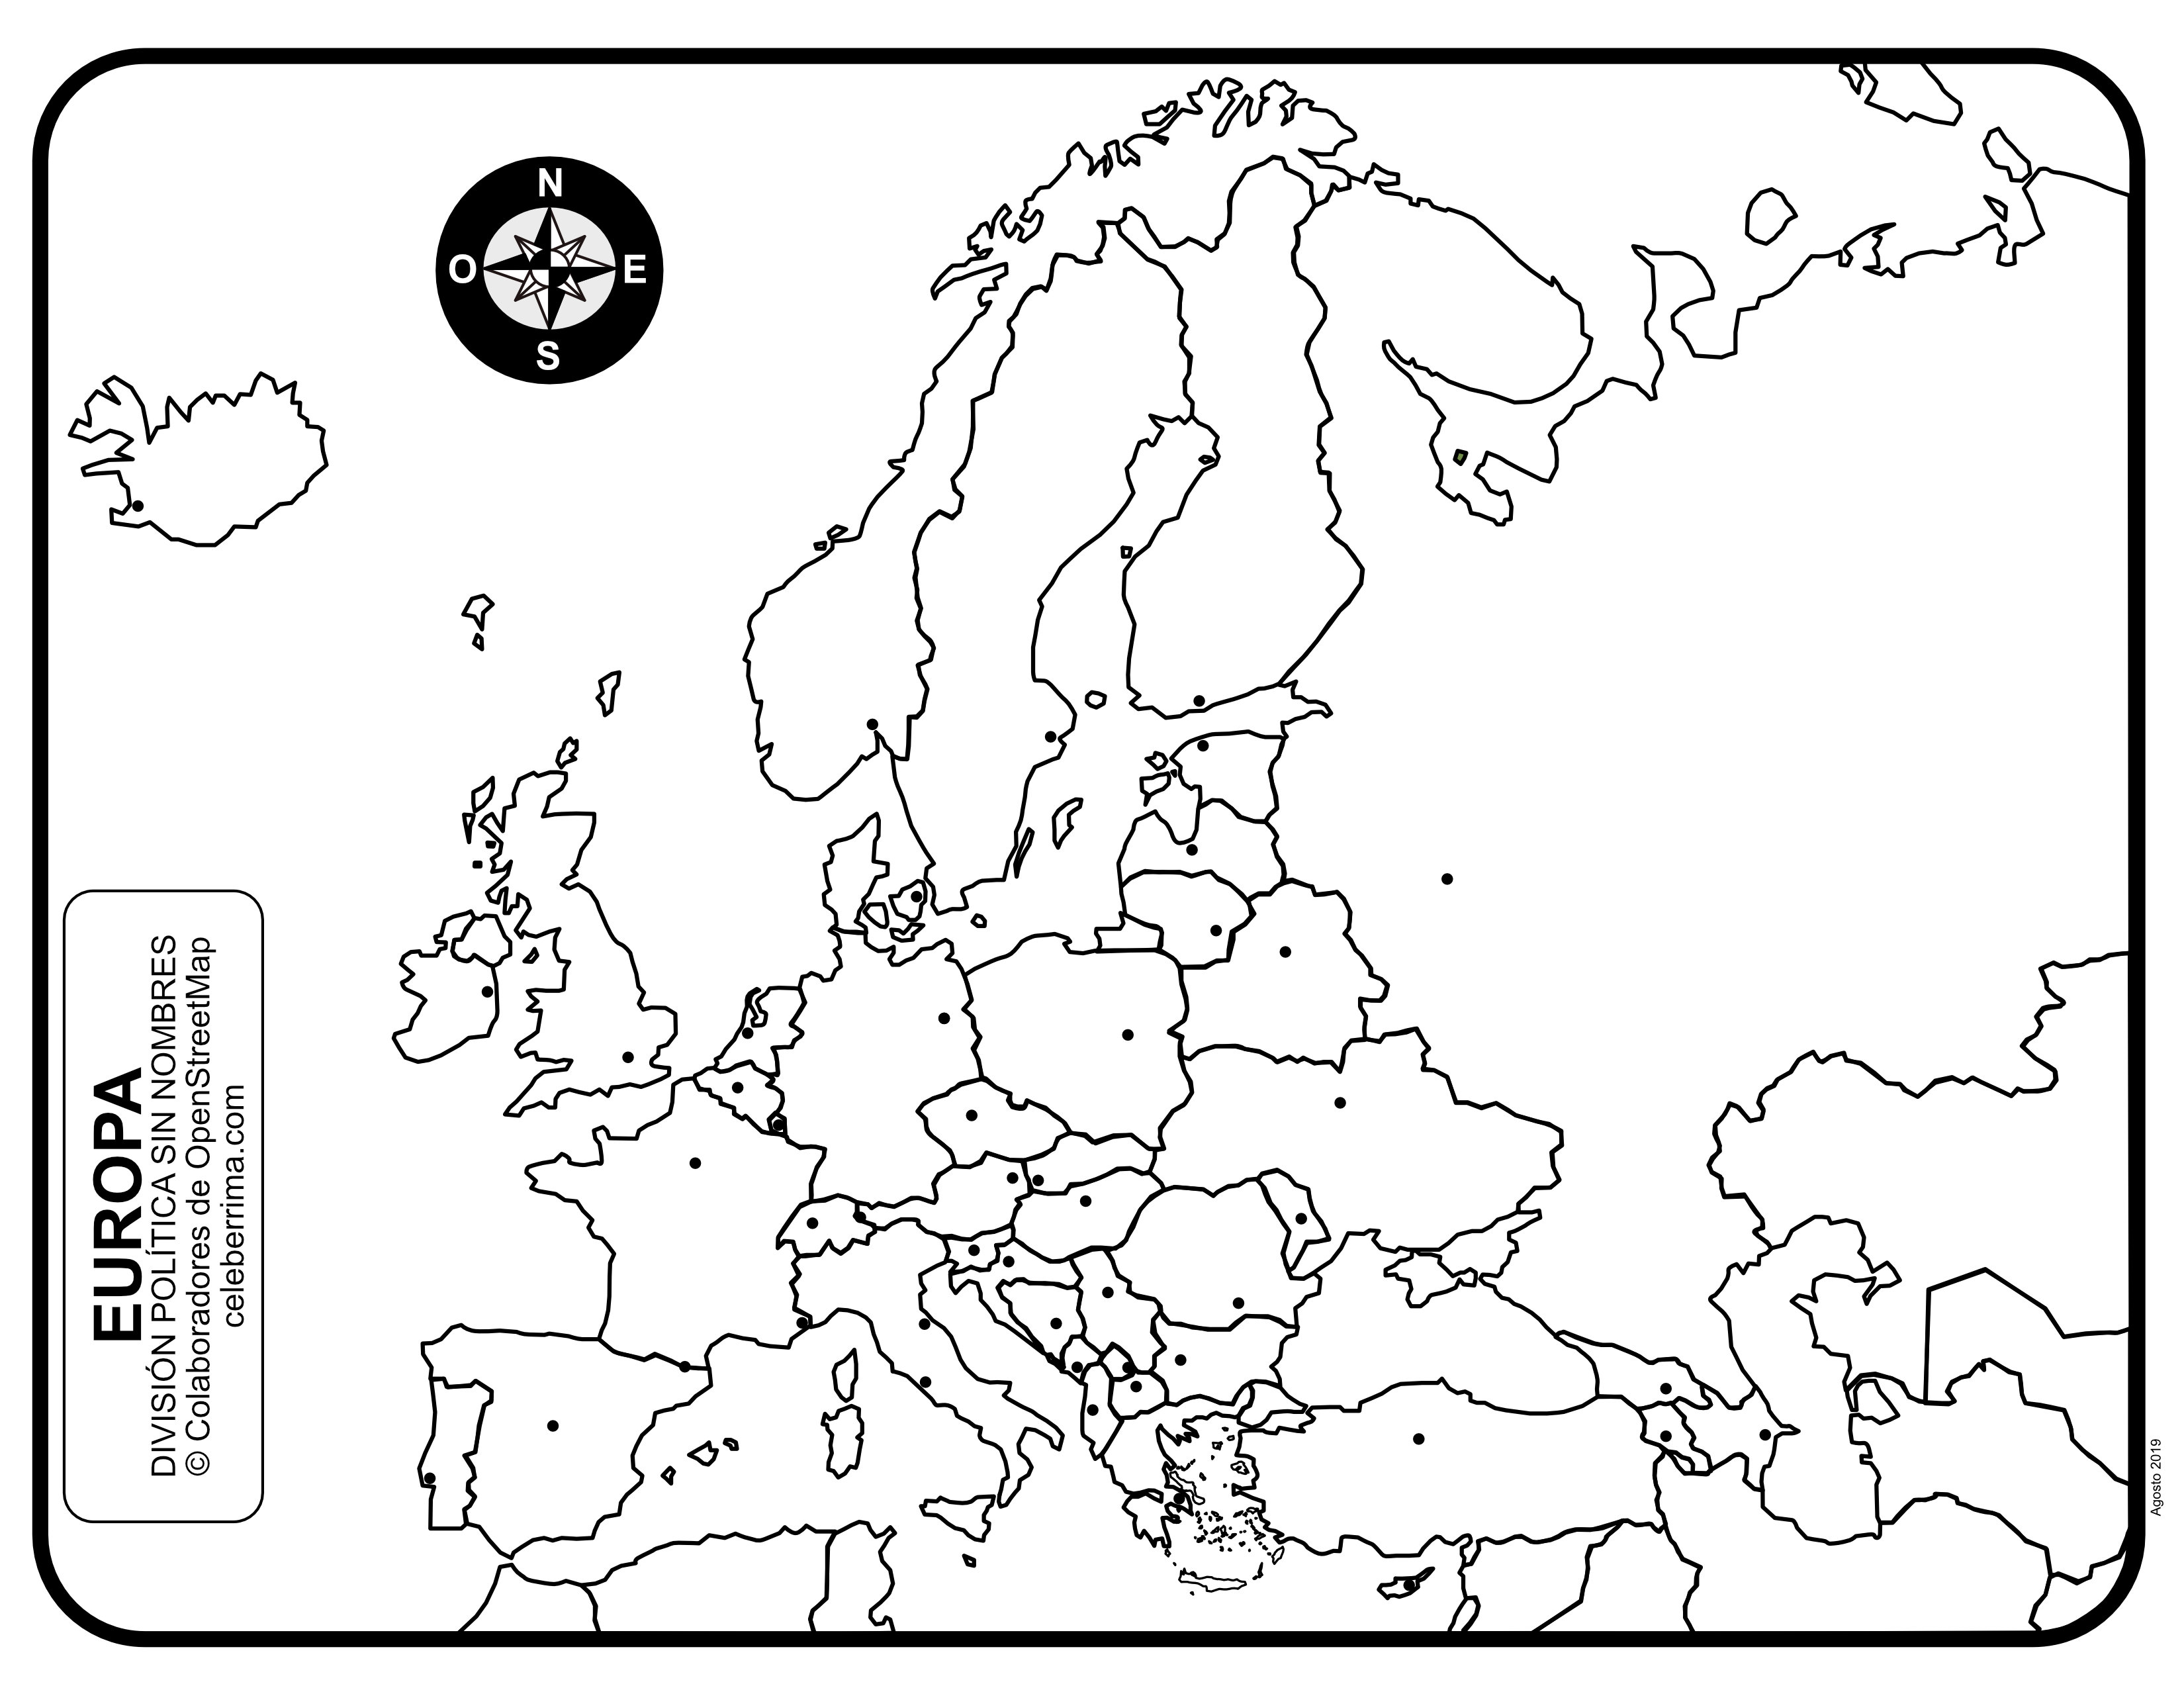 en respuesta a la disturbio distribución mapa politico de europa para